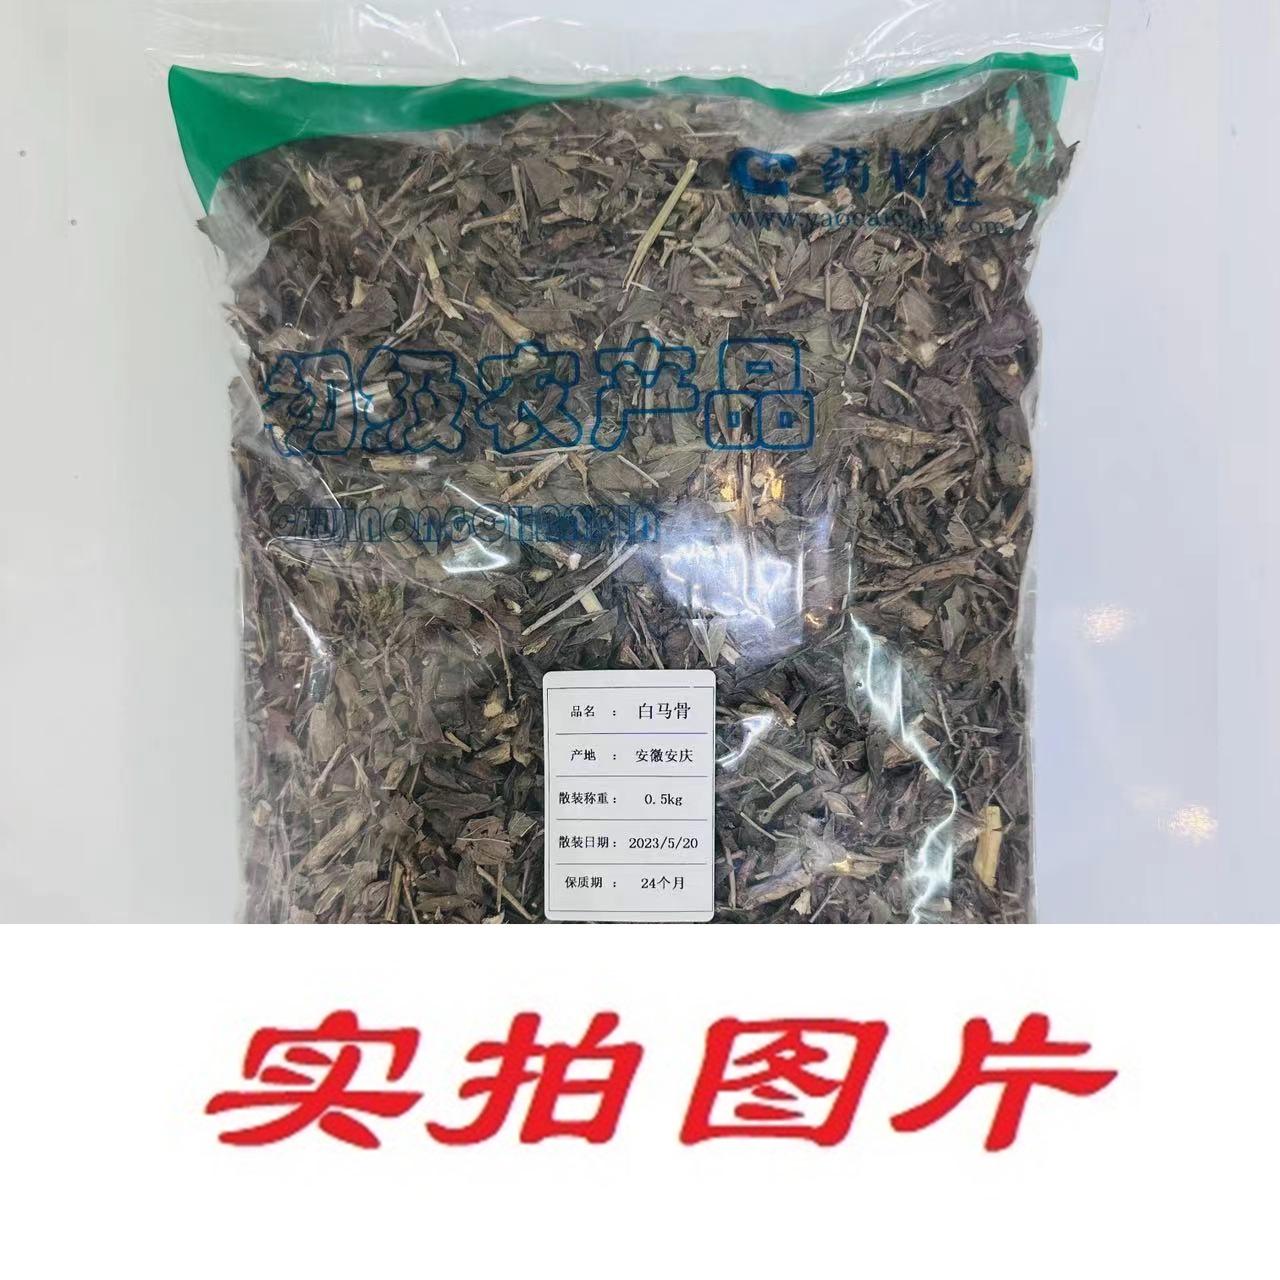 【】白马骨0.5kg-农副产品